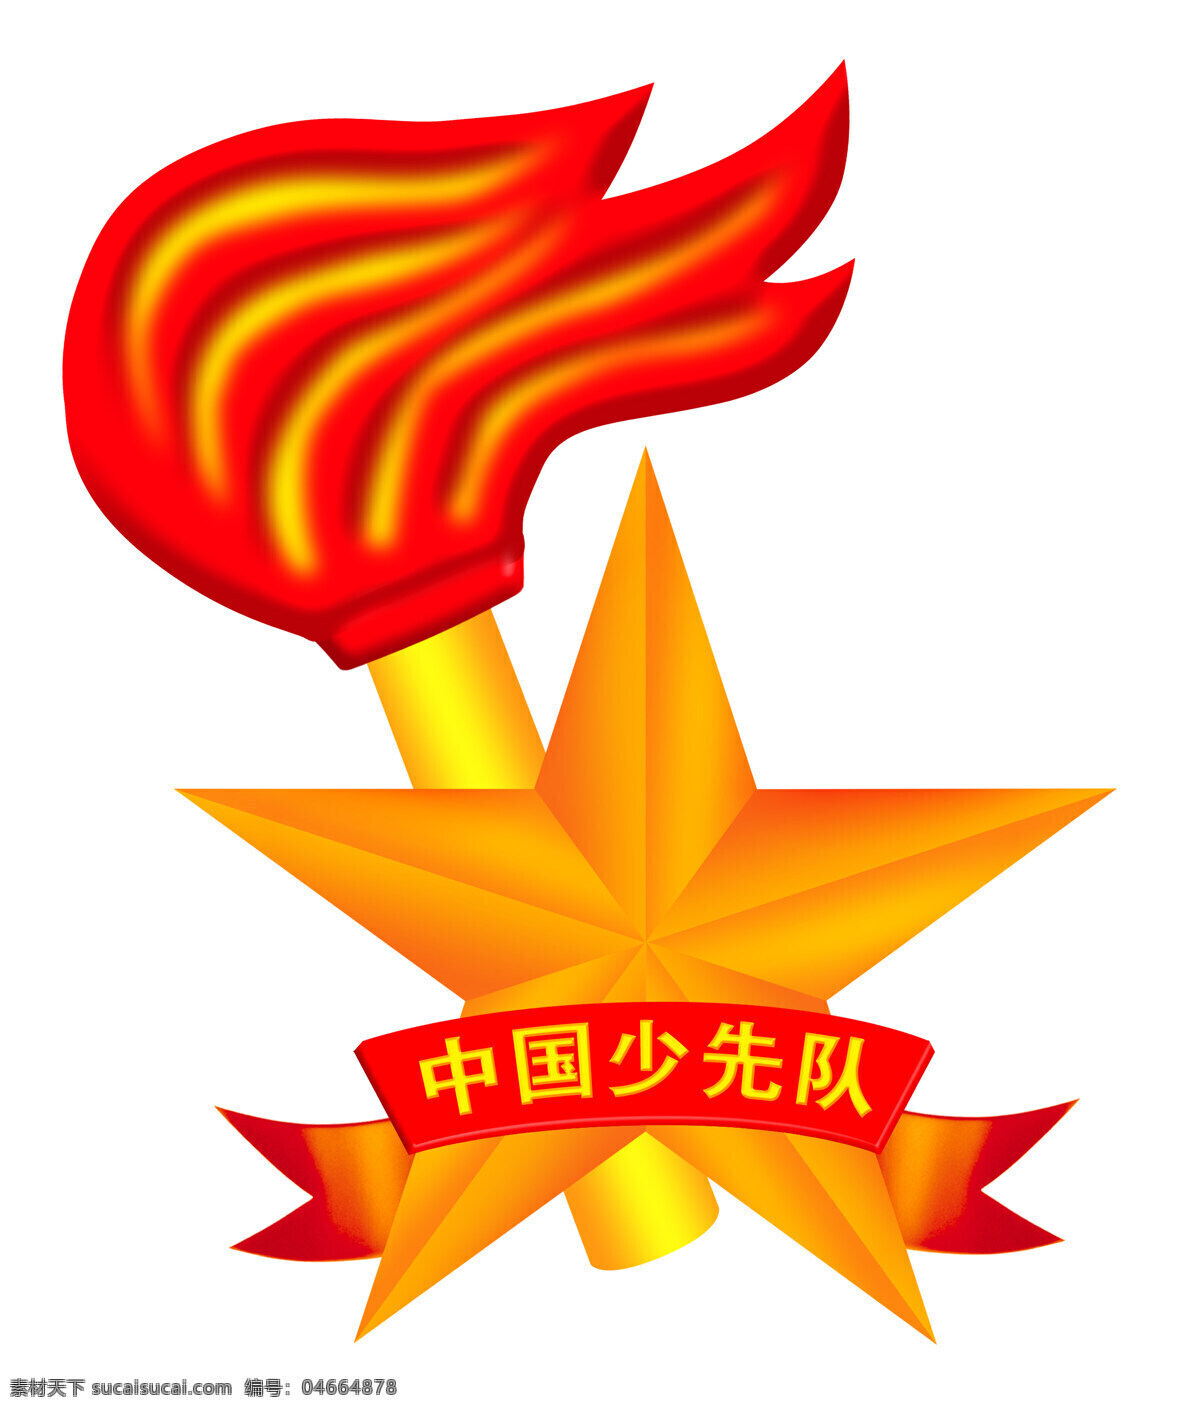 中国 少先队 队 徽 队徽 标志图标 公共标识标志 设计图库